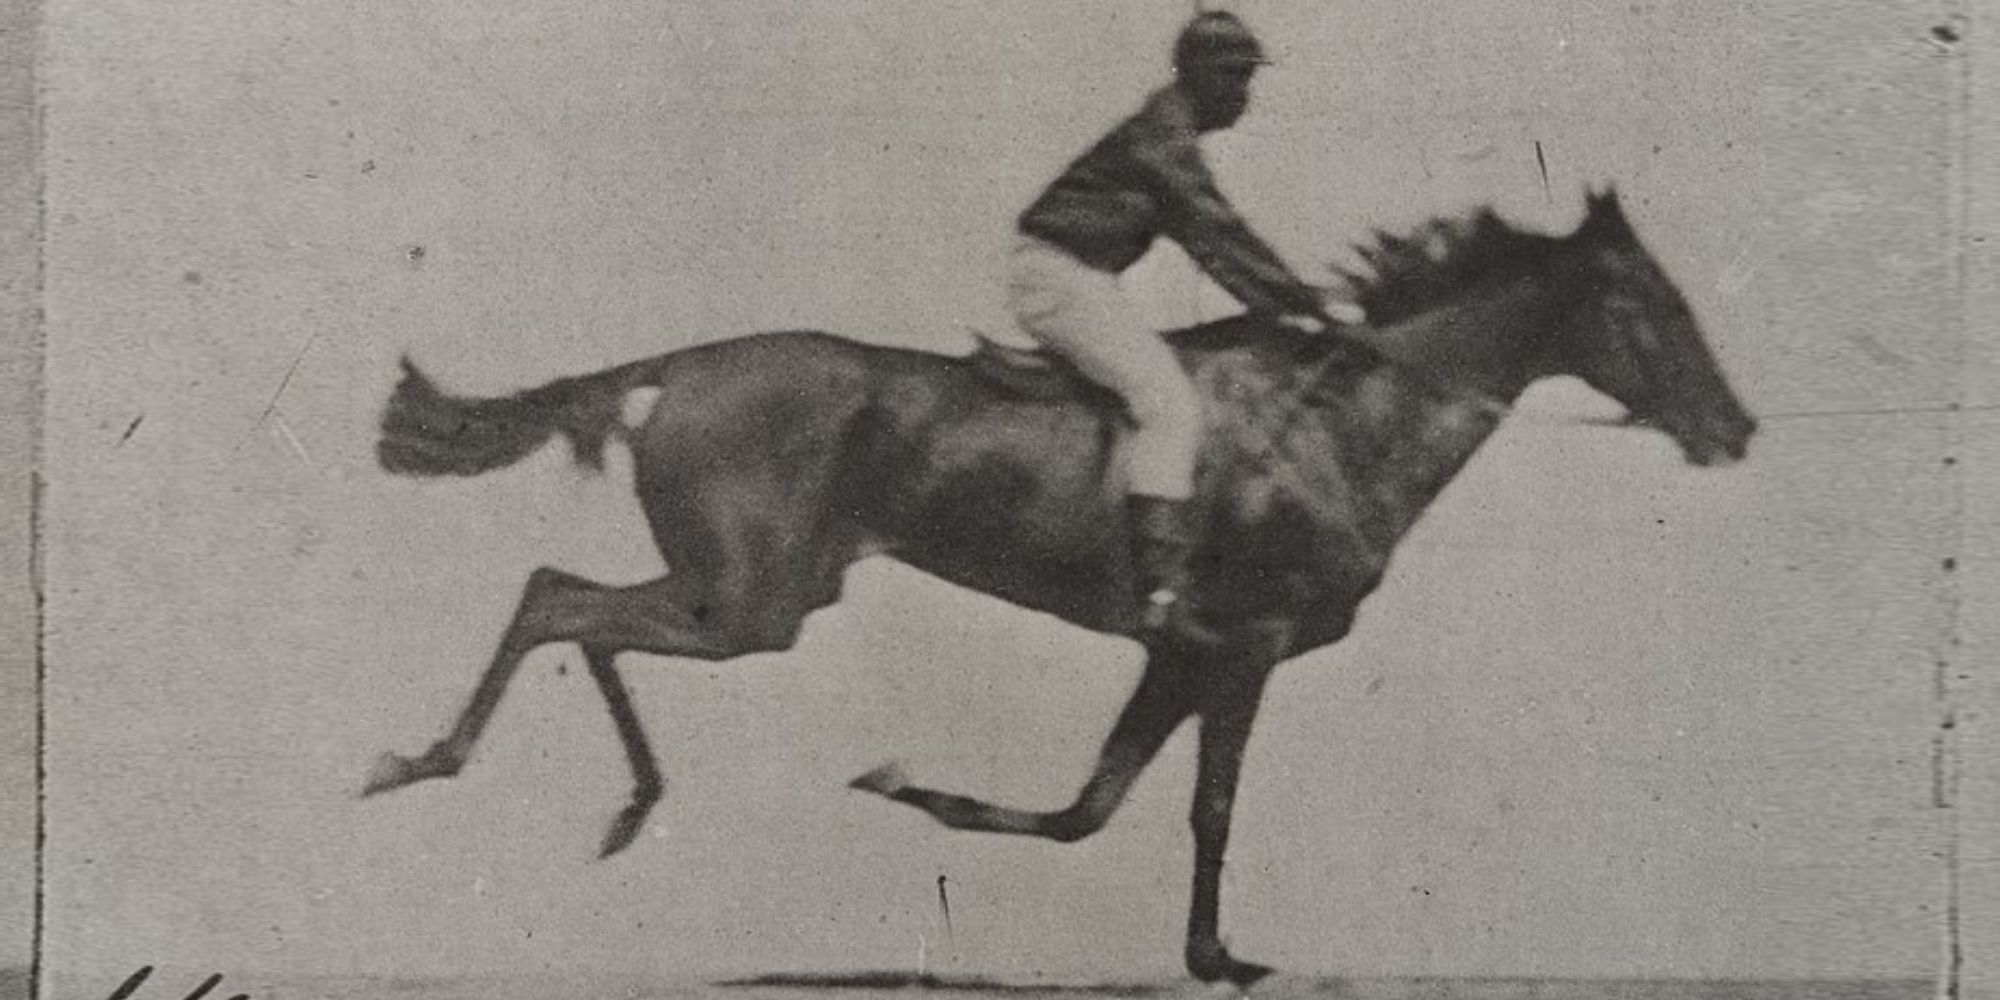 Sallie Gardner at a Gallop - 1878 (1)